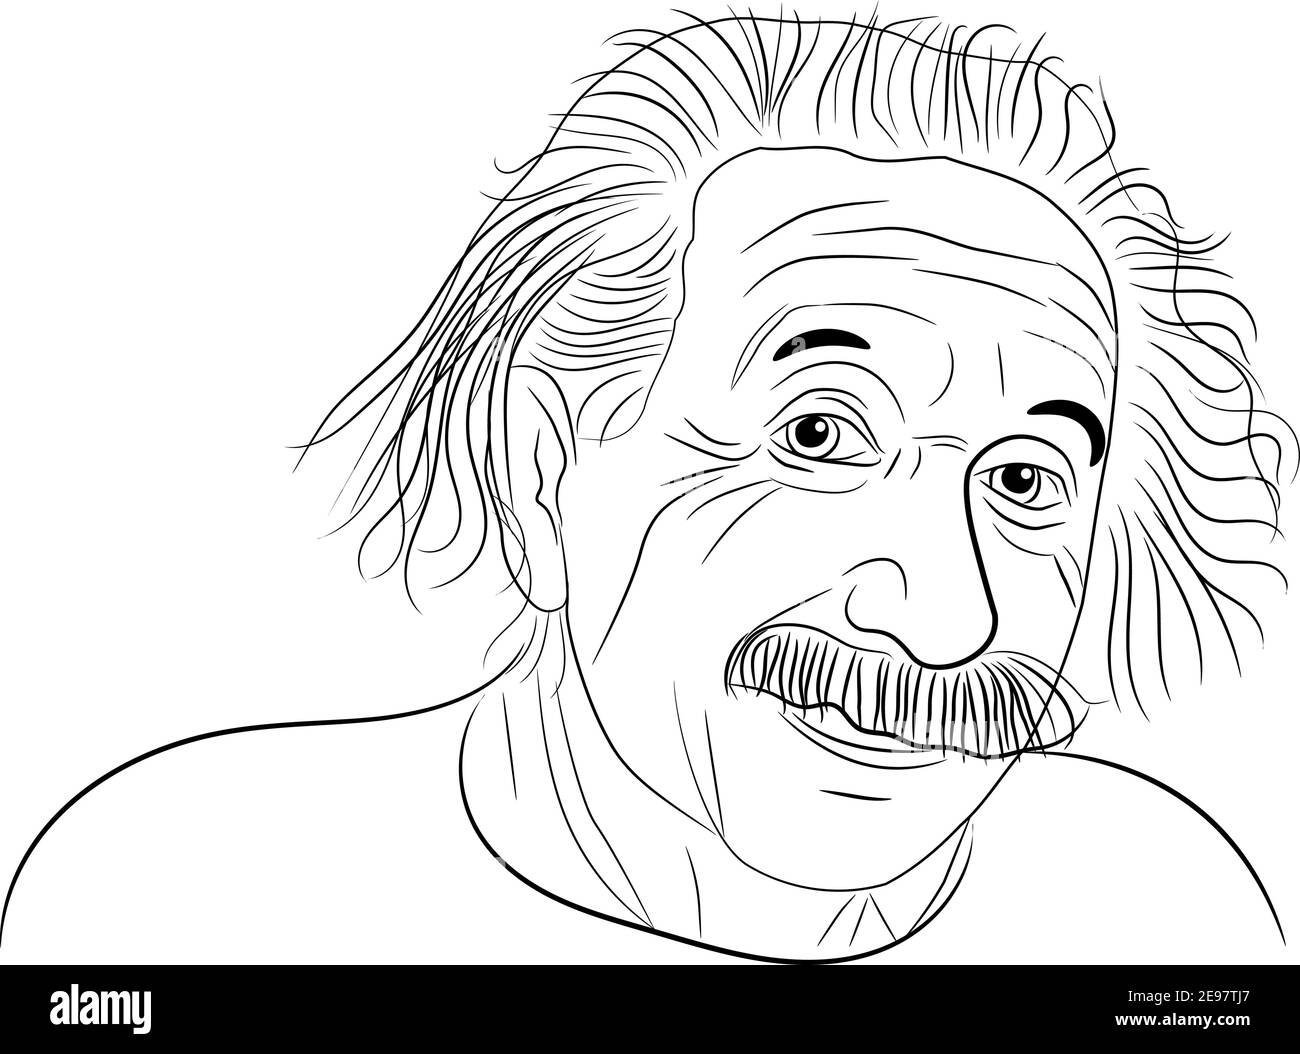 Эйнштейн рисунок ручкой